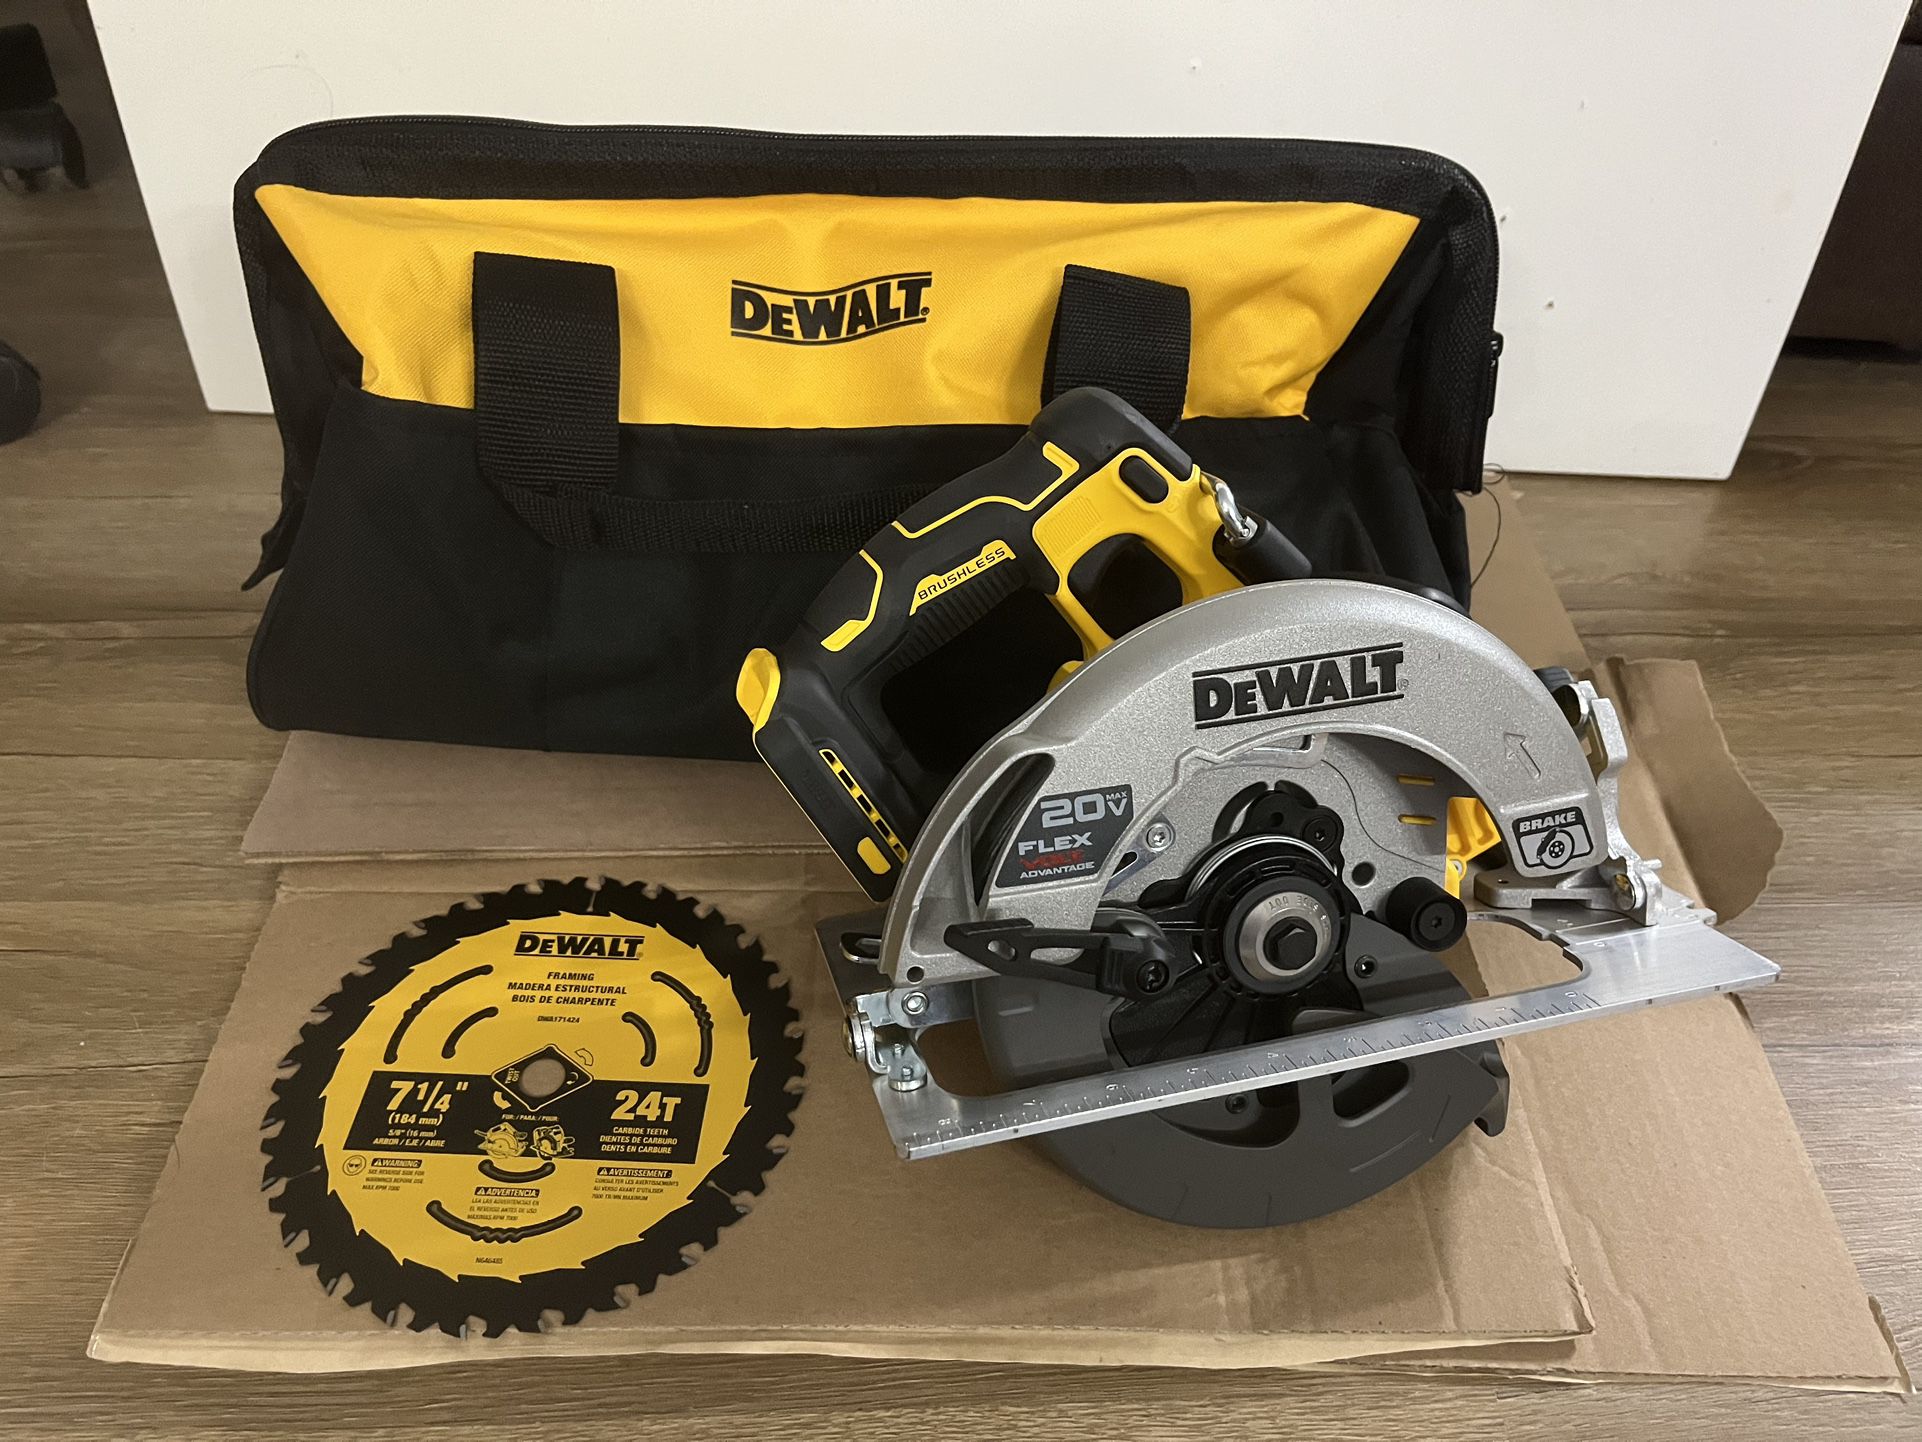 DEWALT 20V 7-1/4 in. Sidewinder Circular Saw with FLEXVOLT ADVANTAGE (tool and bag) No Battery